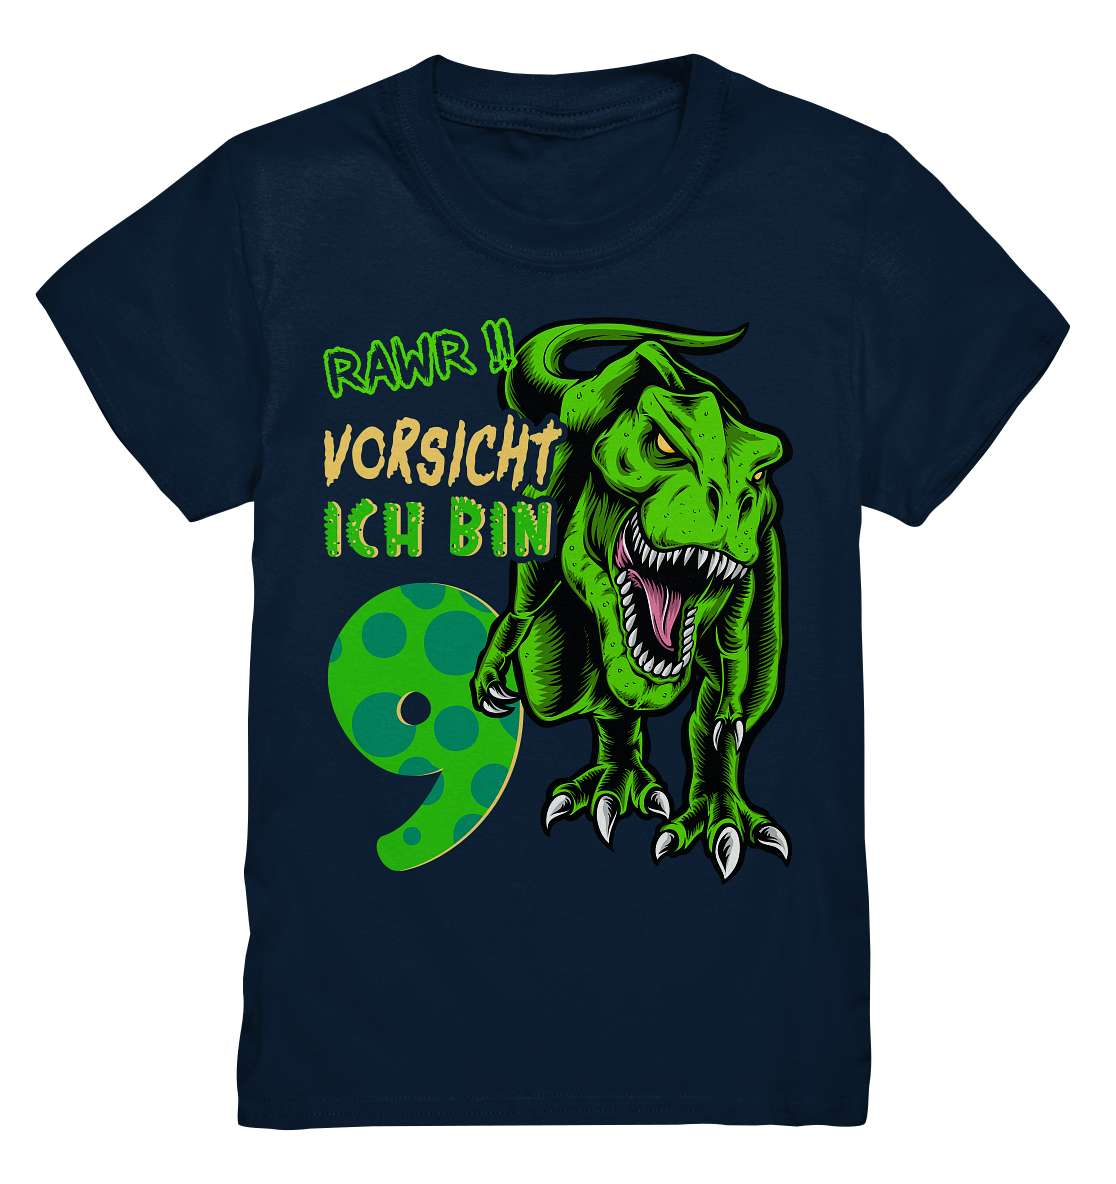 9. Kinder Geburtstag - T-REX Dinosaurier - Ich bin 9 Jahre - Geschenk - Kids Premium Shirt